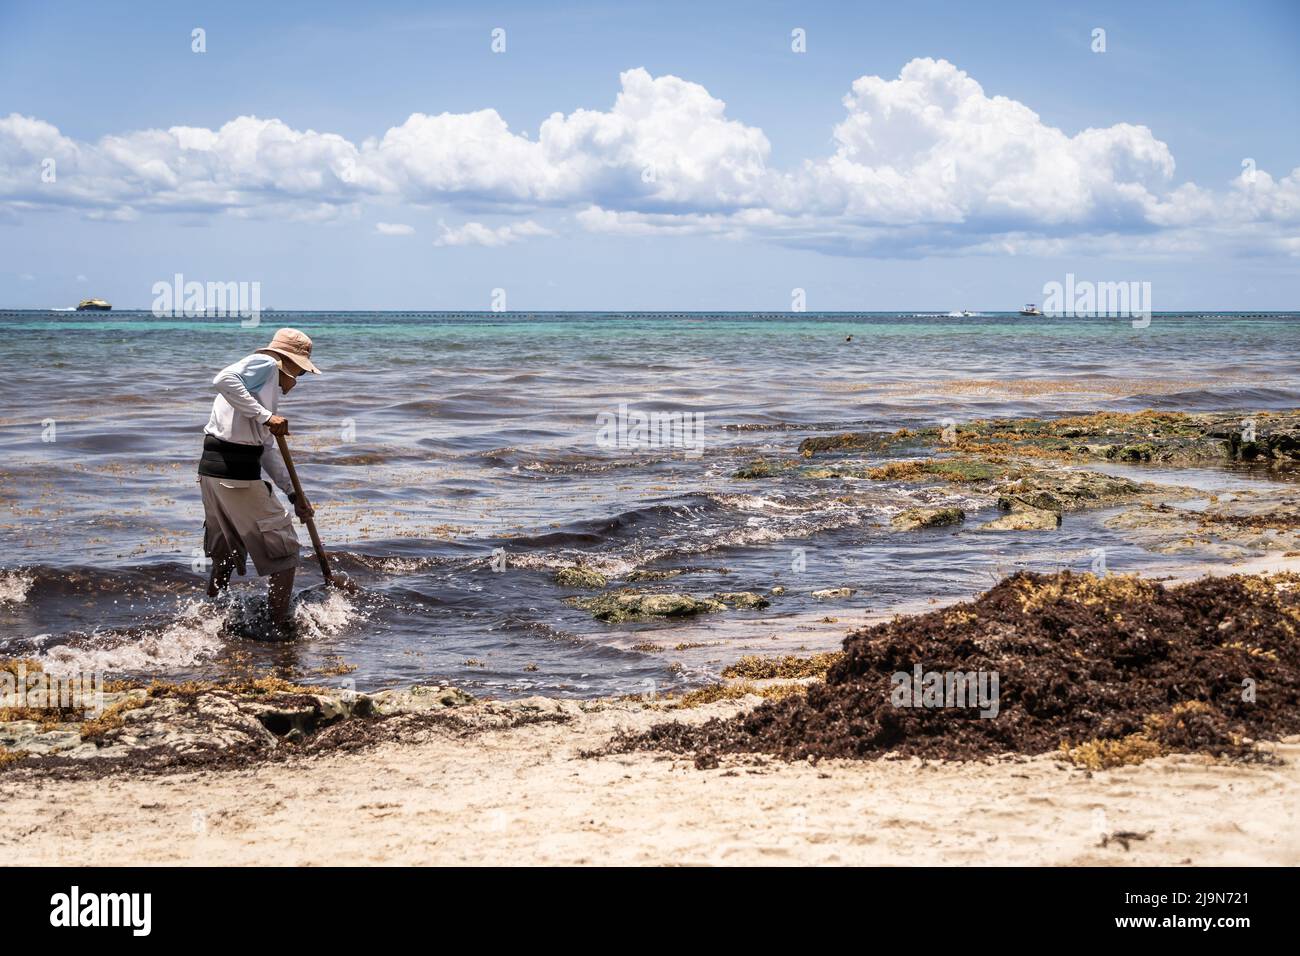 Travailleur mexicain cueillant des algues de sargassum sur la plage.problème d'écologie dans les îles tropicales. Banque D'Images